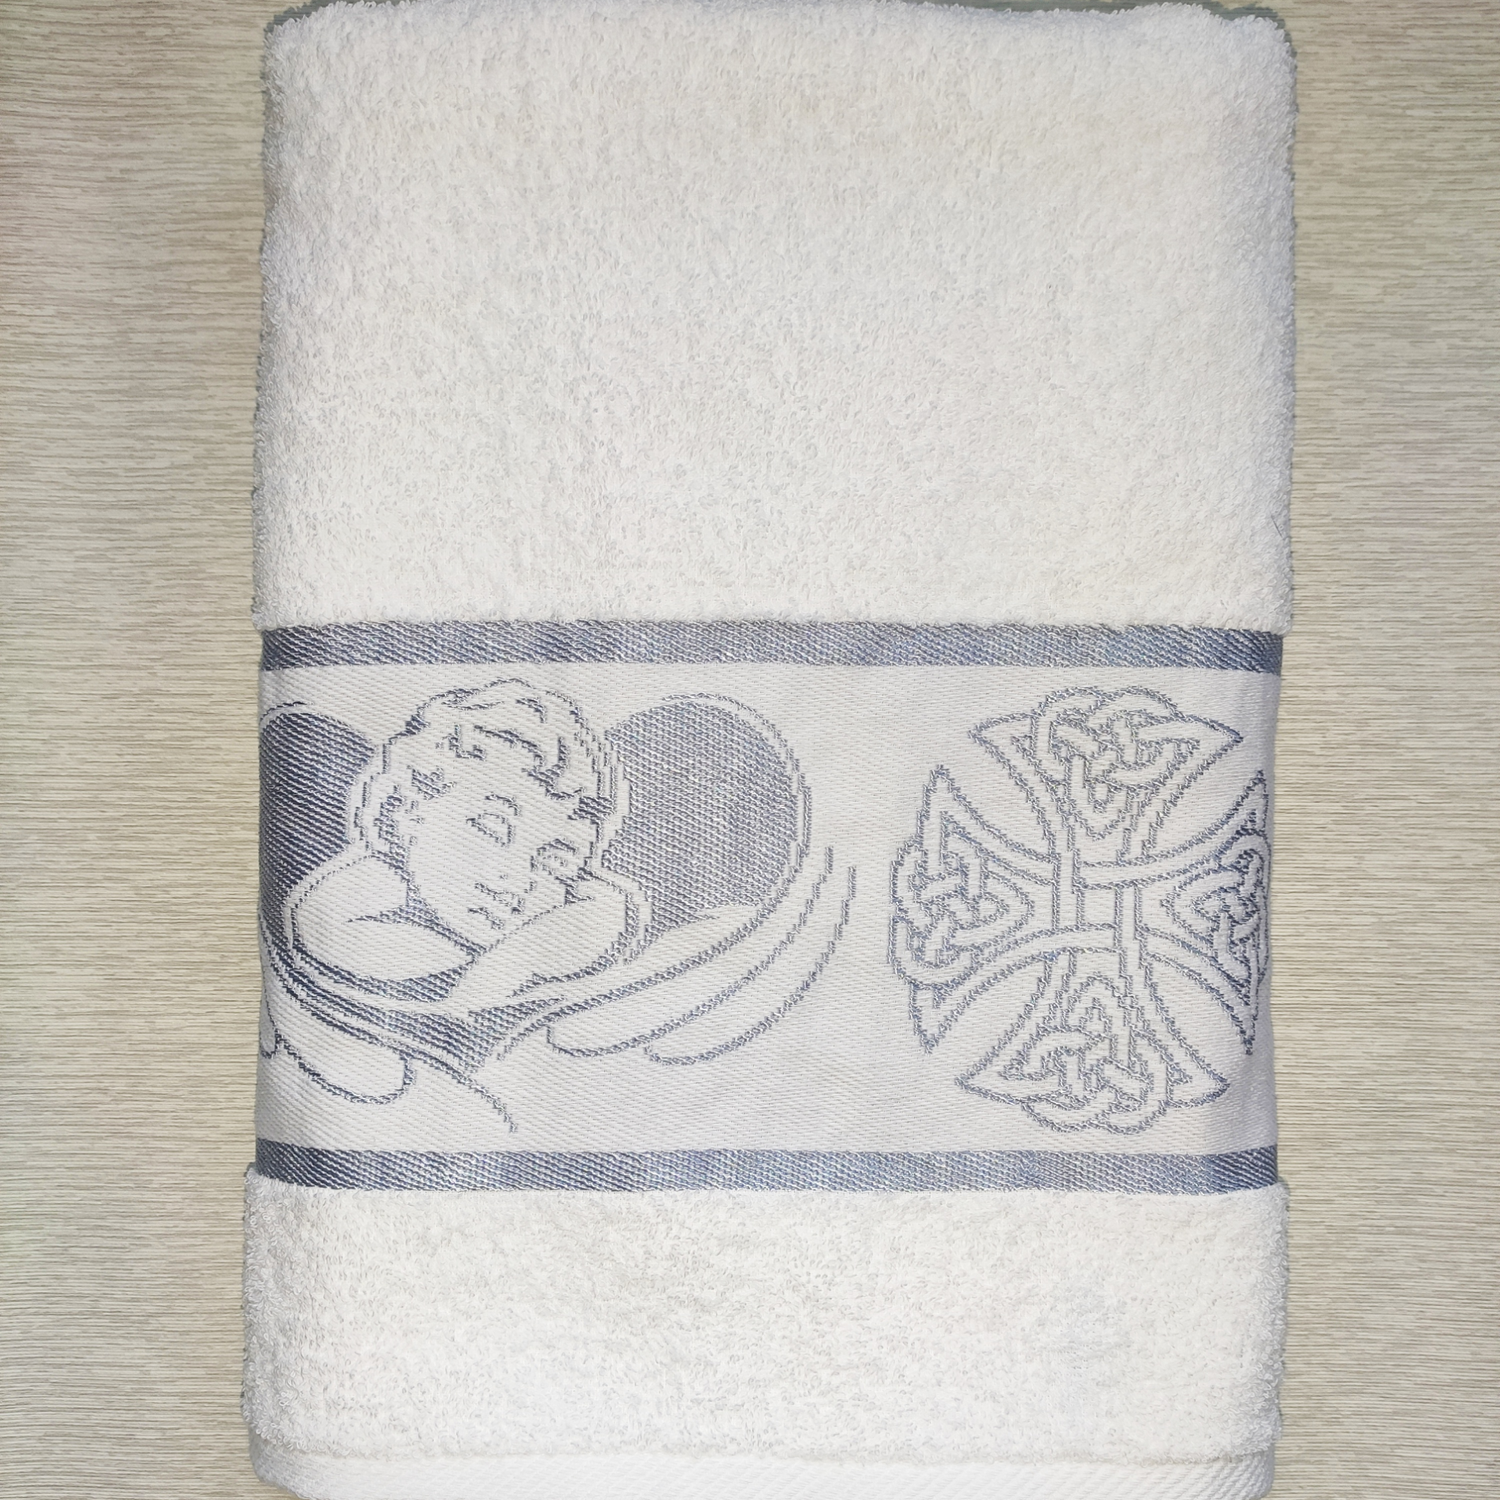 Полотенце Вышневолоцкий текстиль крестильное серебро 70х140 см - фото 1